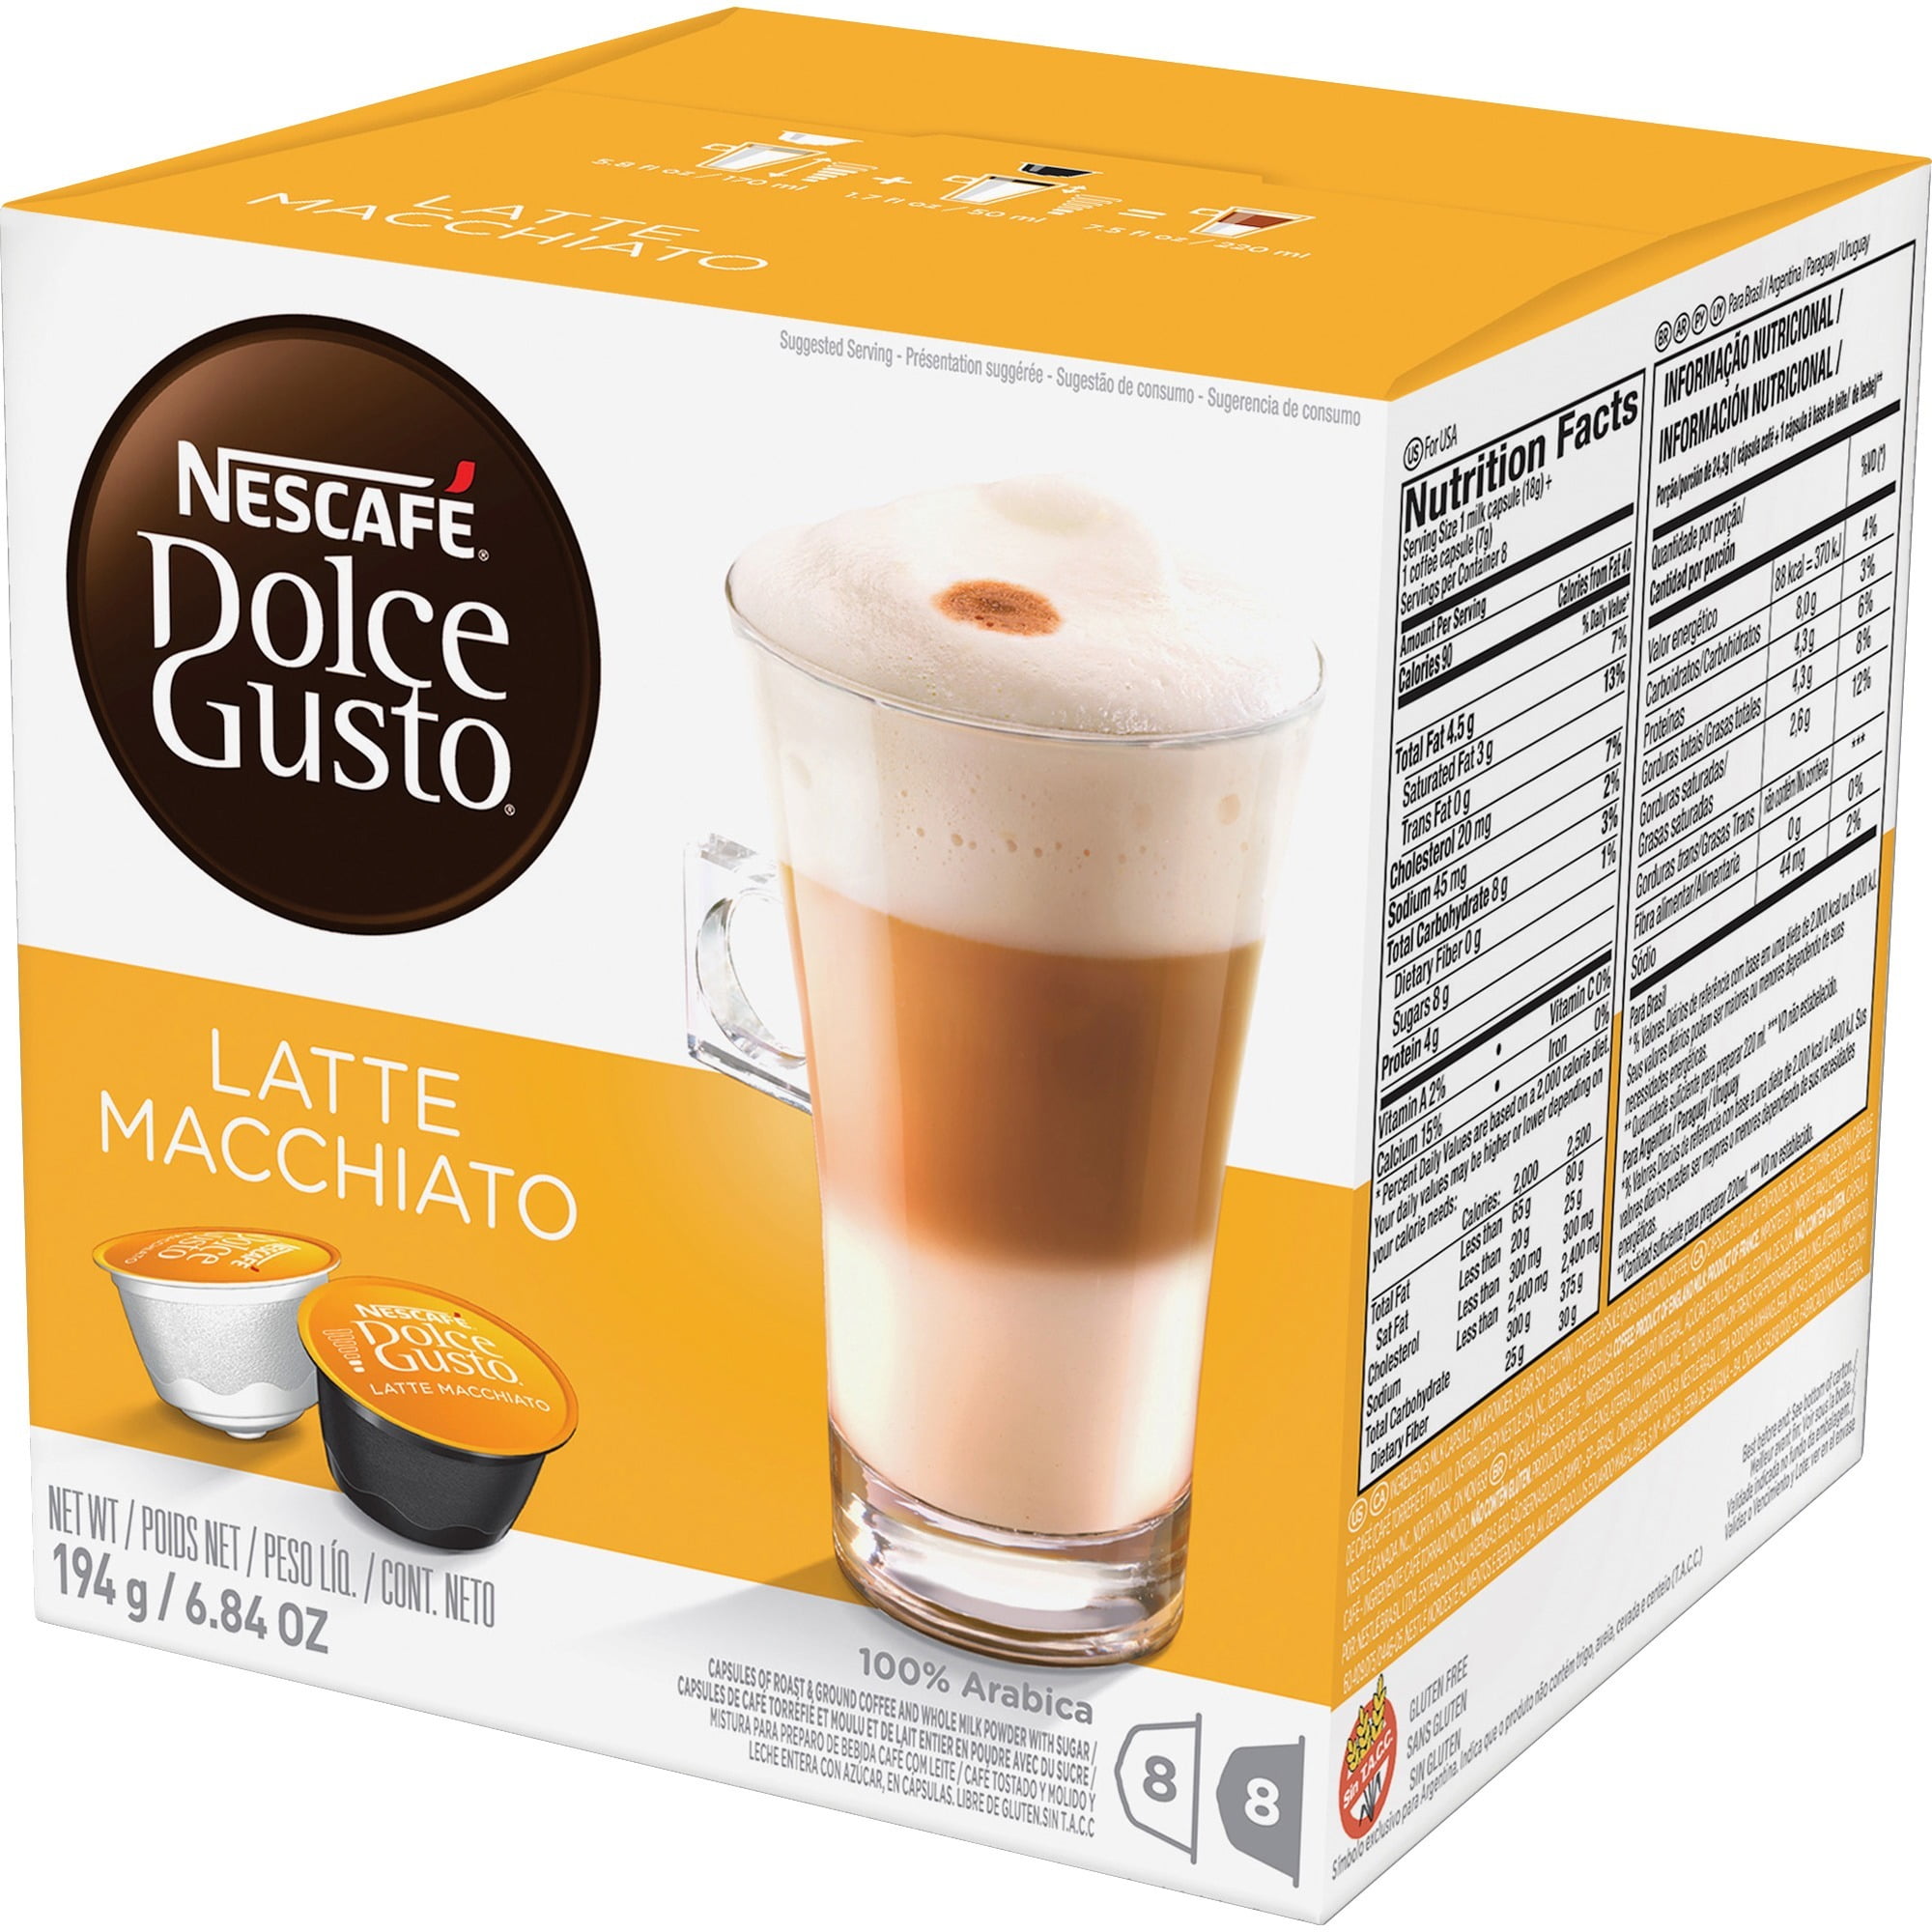 Nestle Nescafe dolce gusto latte macchiato 6.86 oz